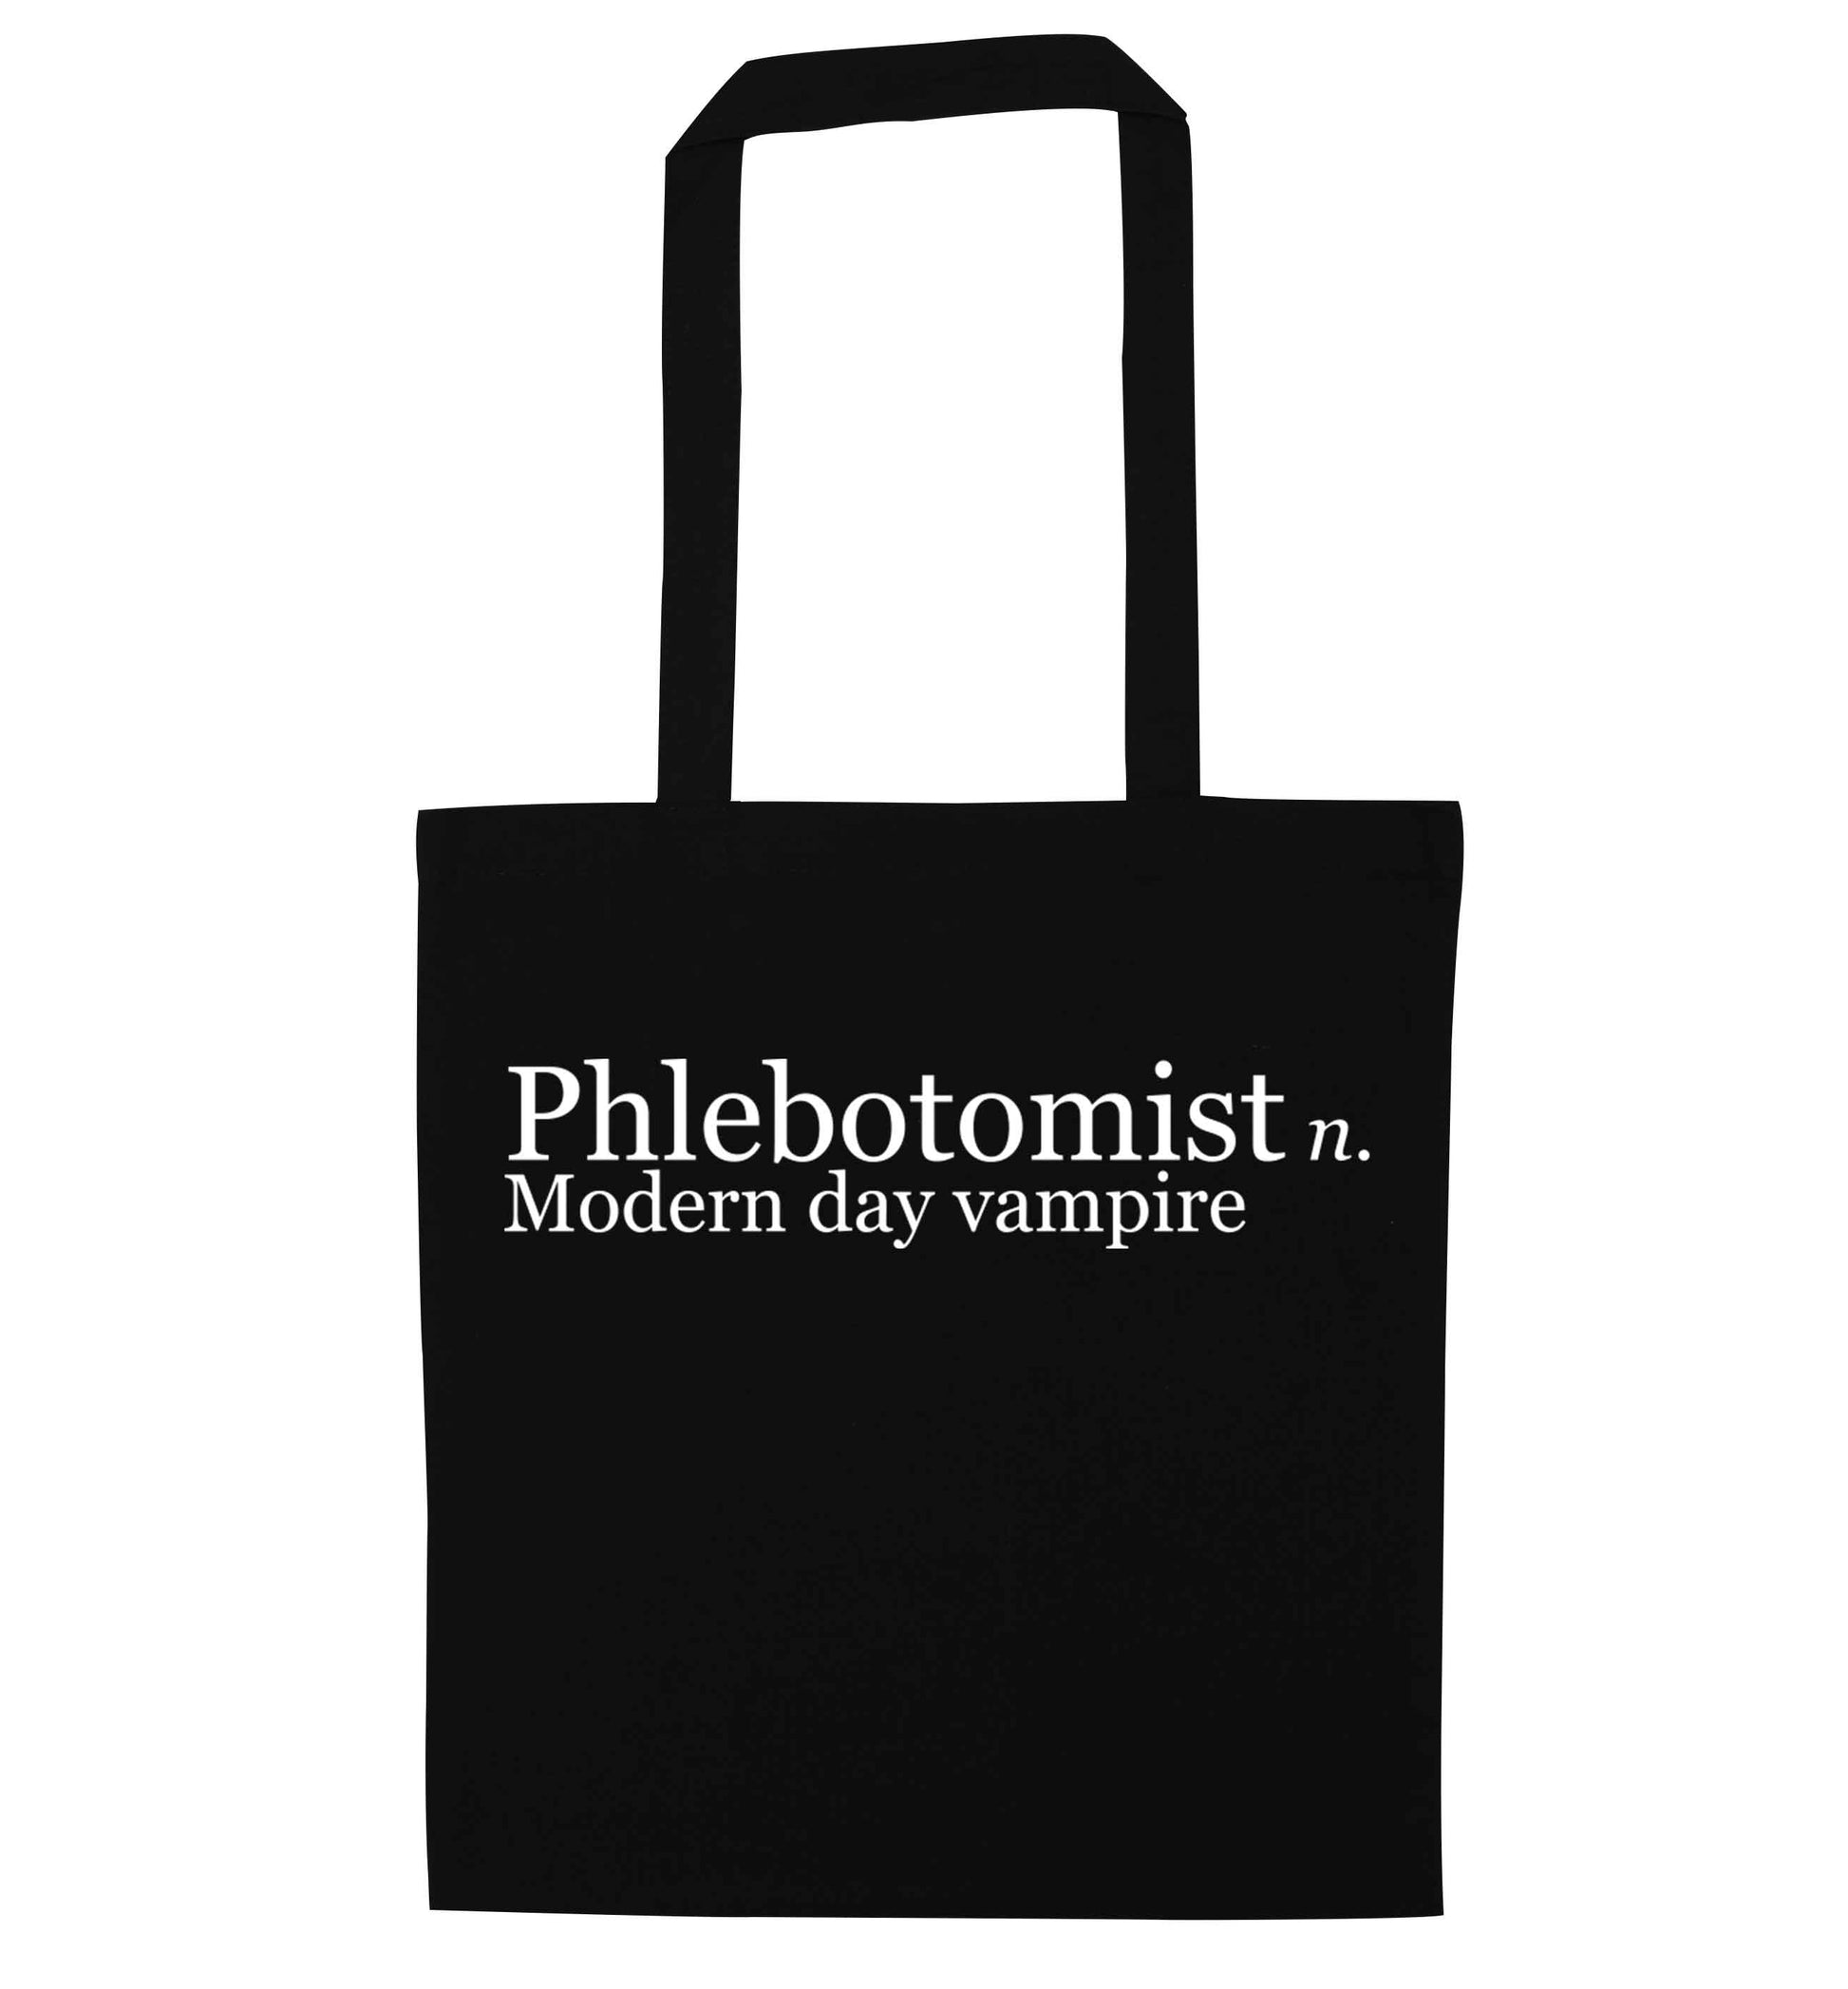 Phlebotomist - Modern day vampire black tote bag